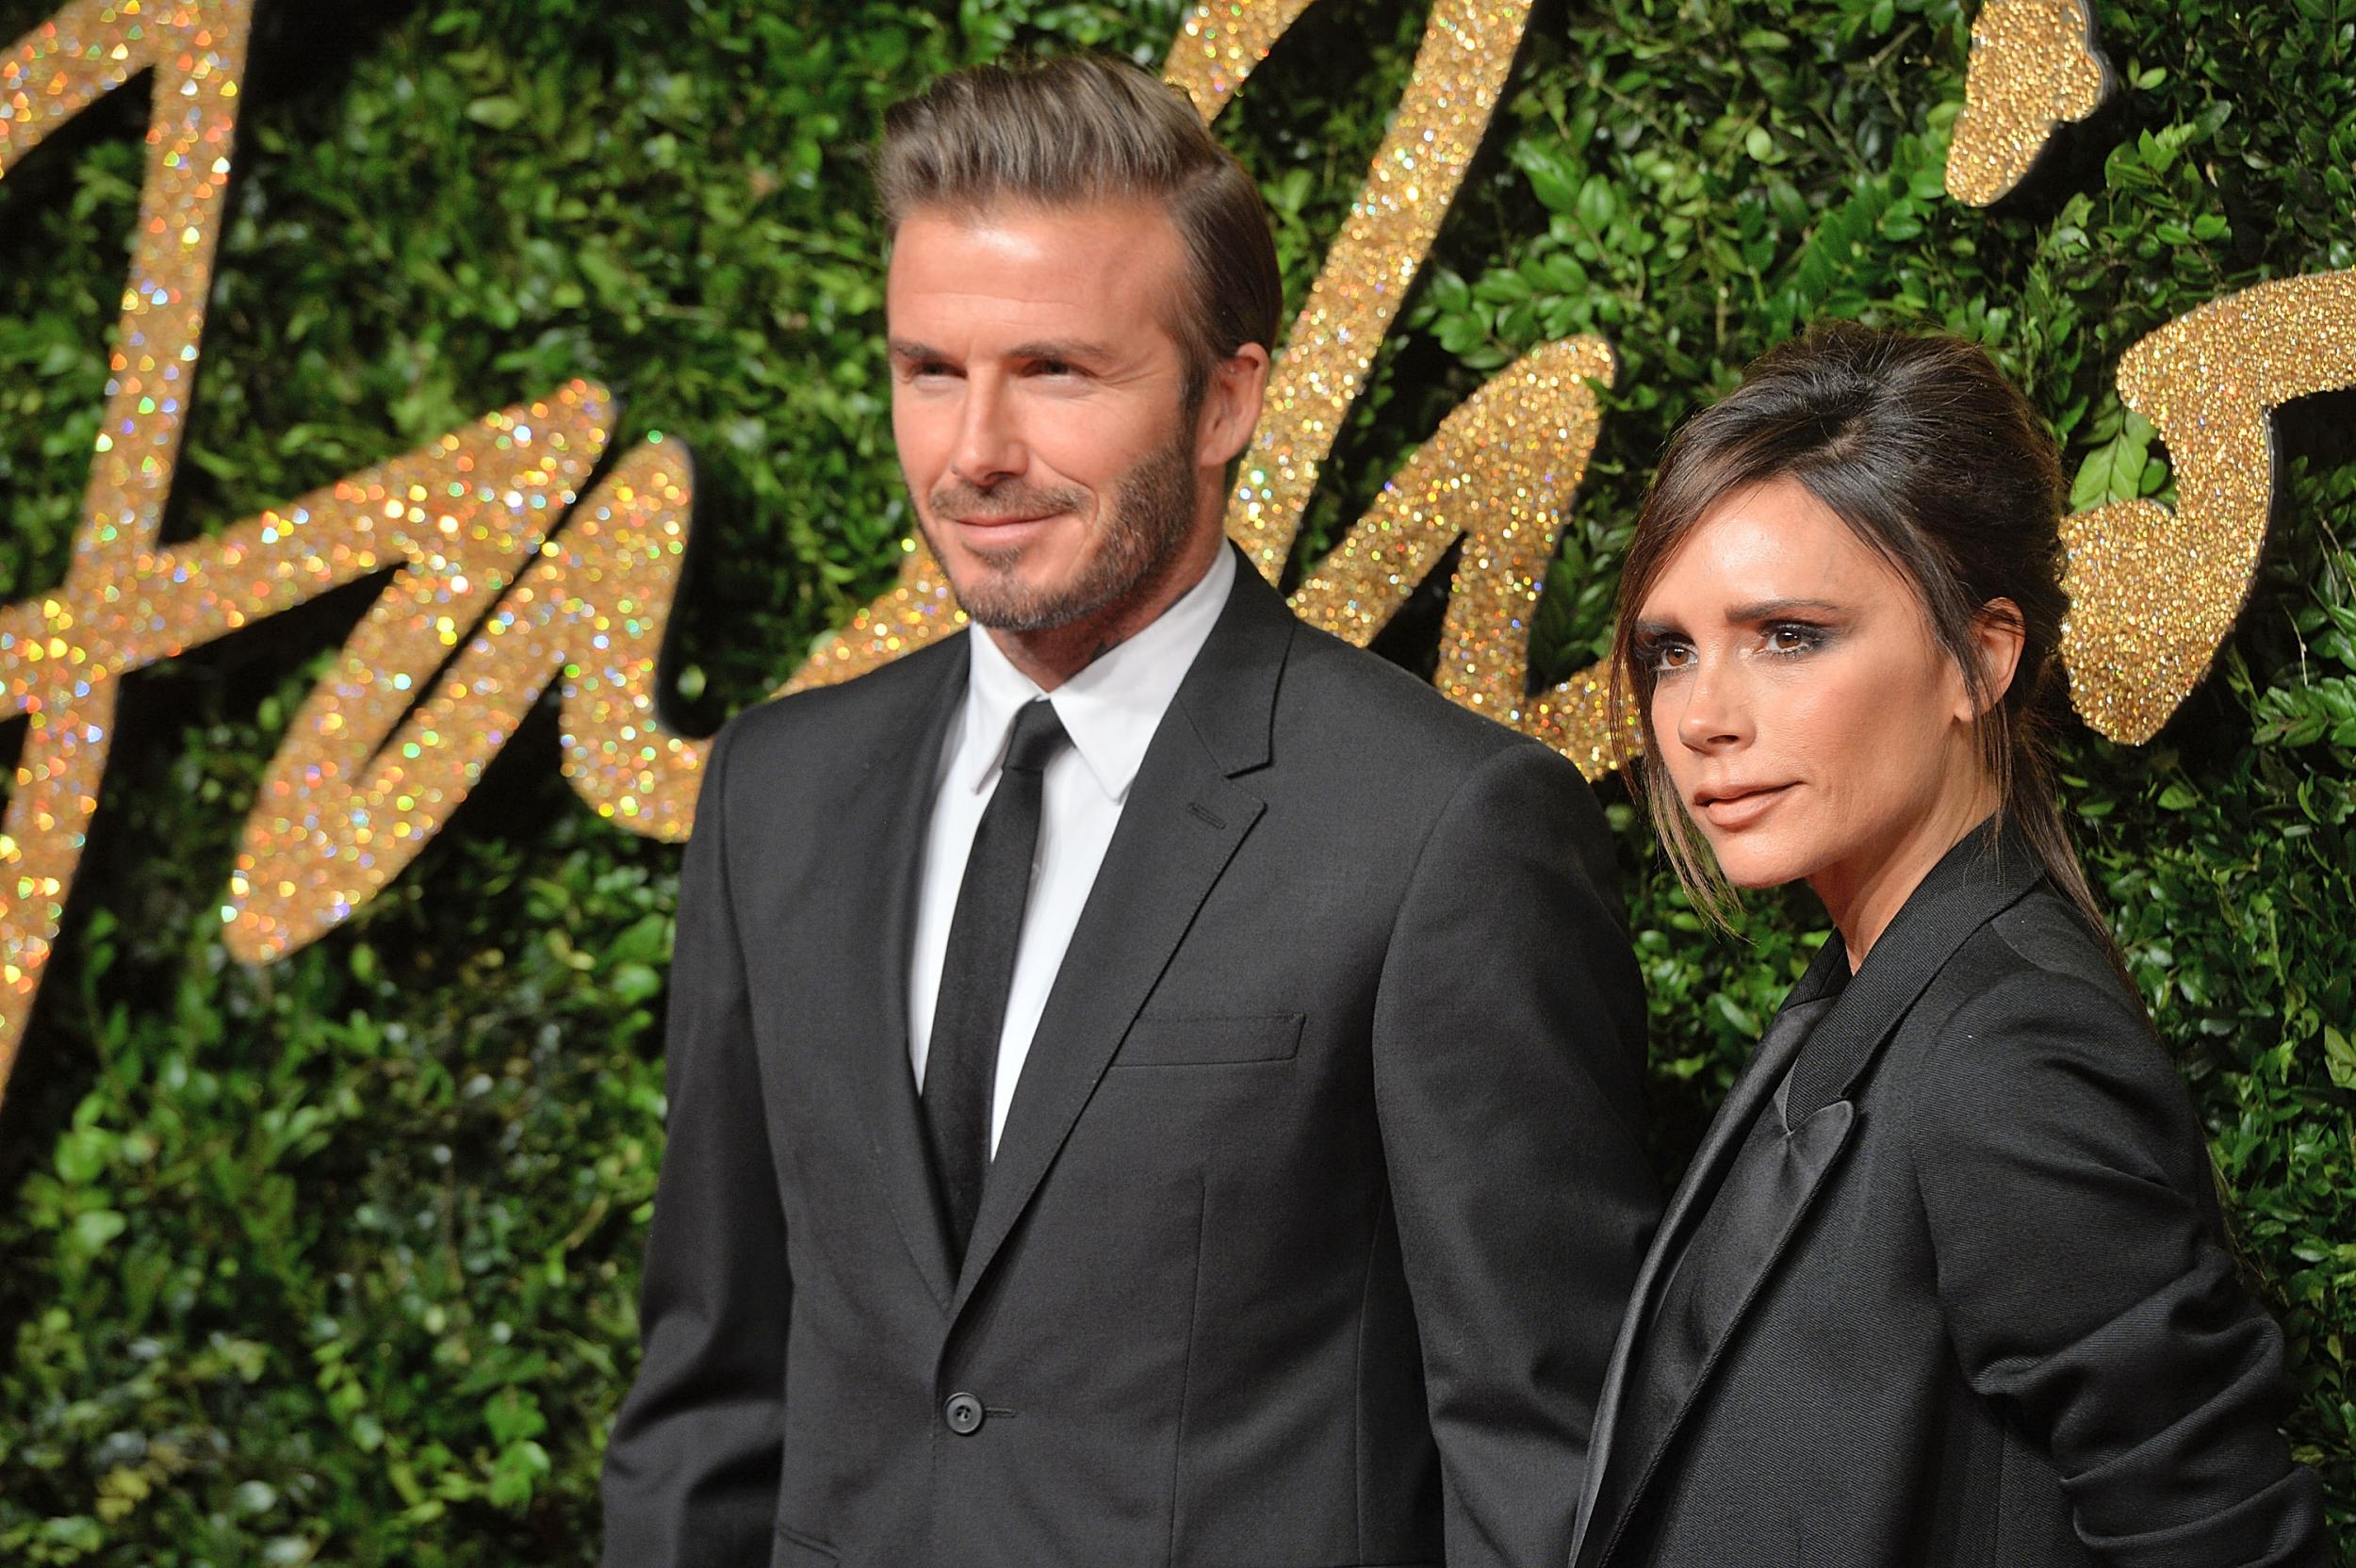 Victoria and David Beckham at the 2015 British Fashion Awards